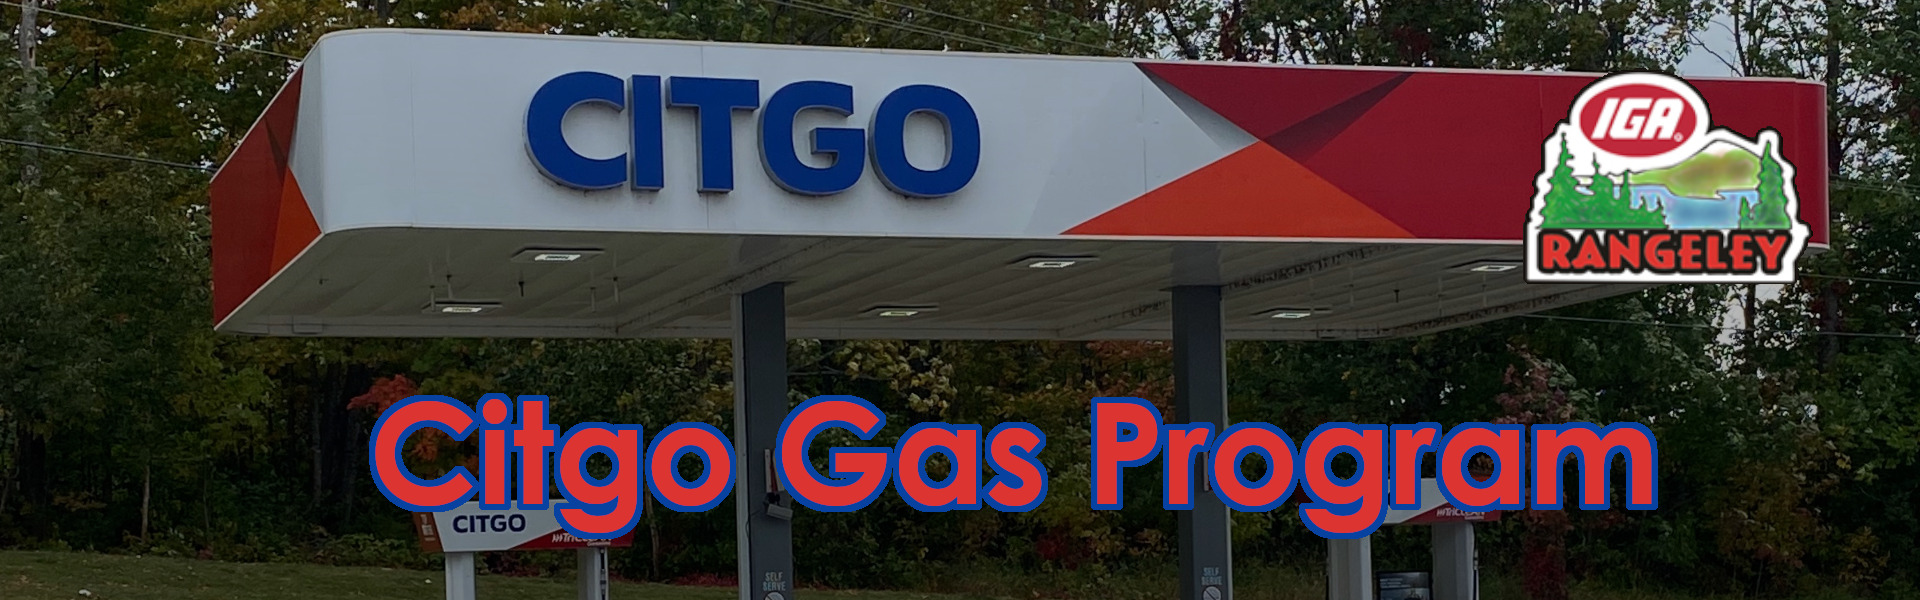 Citgo Gas Program